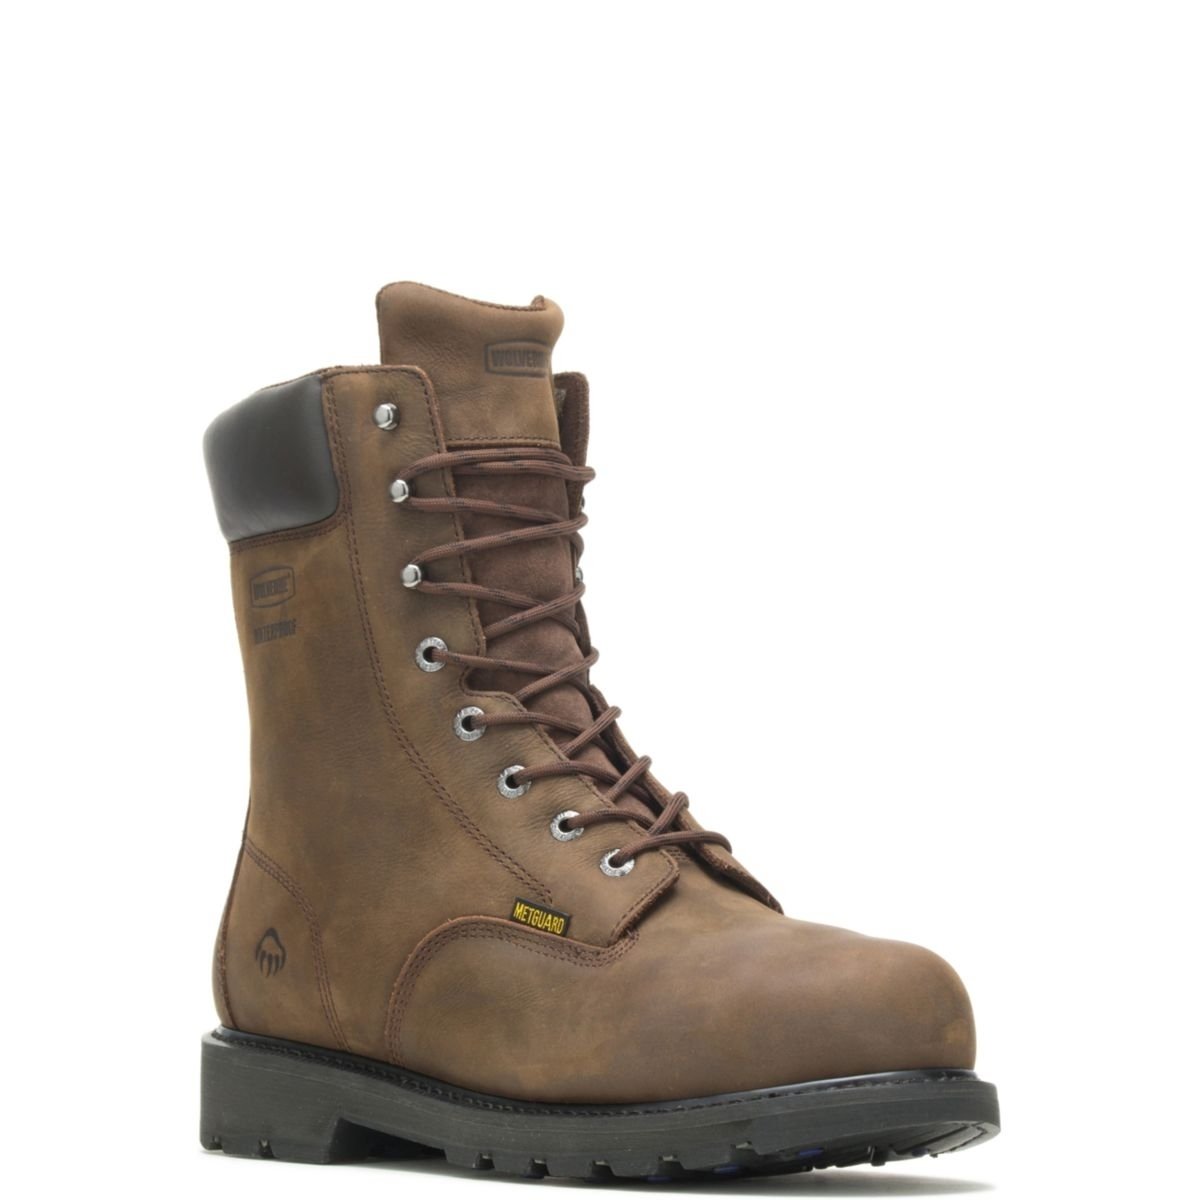 WOLVERINE Men's McKay 8 Waterproof Steel Toe Work Boot Brown - W05680 10 BROWN - BROWN, 12